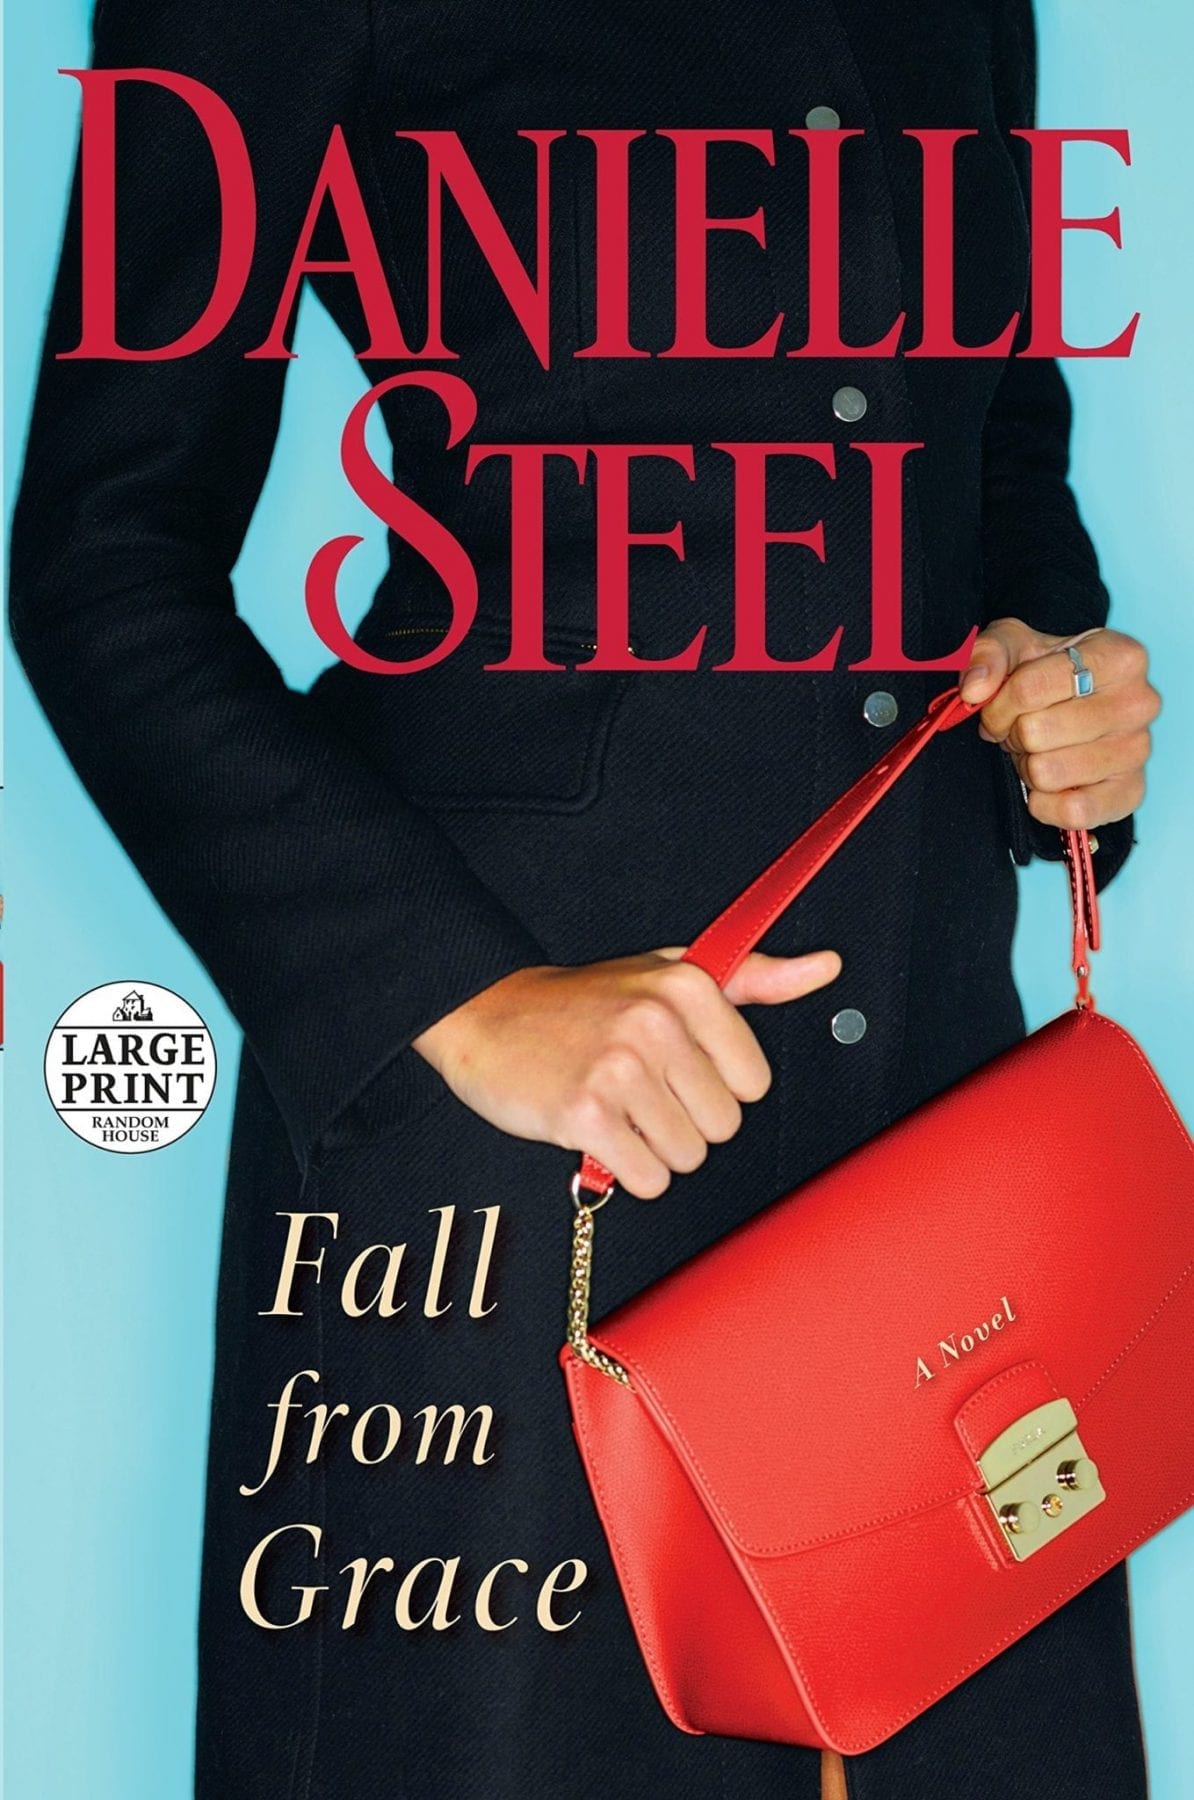 Fall From Grace by Danielle Steel